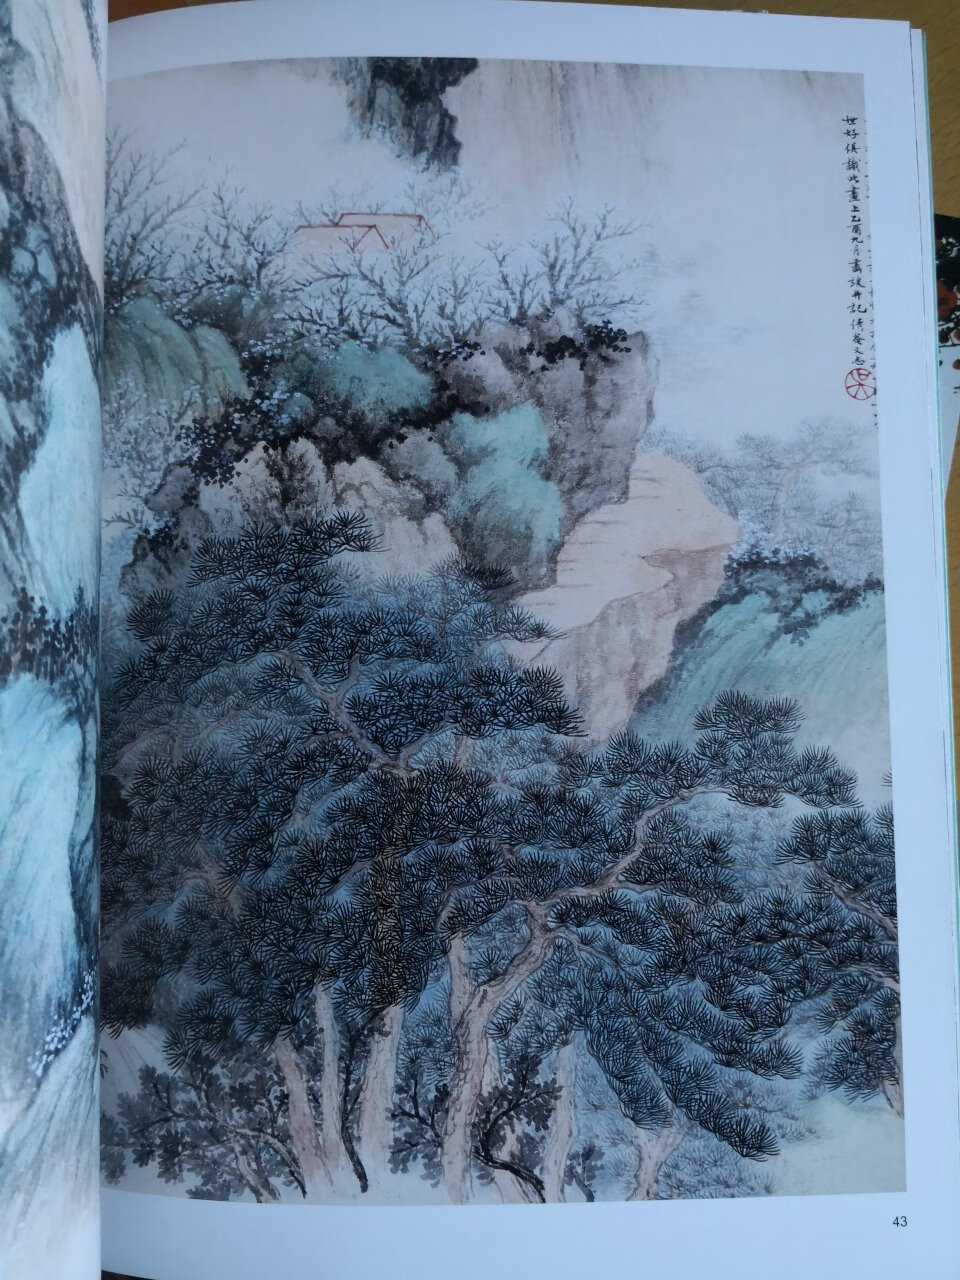 吴湖凡是我国近现代著名山水大师，对后世影响很大，印刷很清晰，一版一印，纸张很好，大出版社出版，很高兴能拥有。